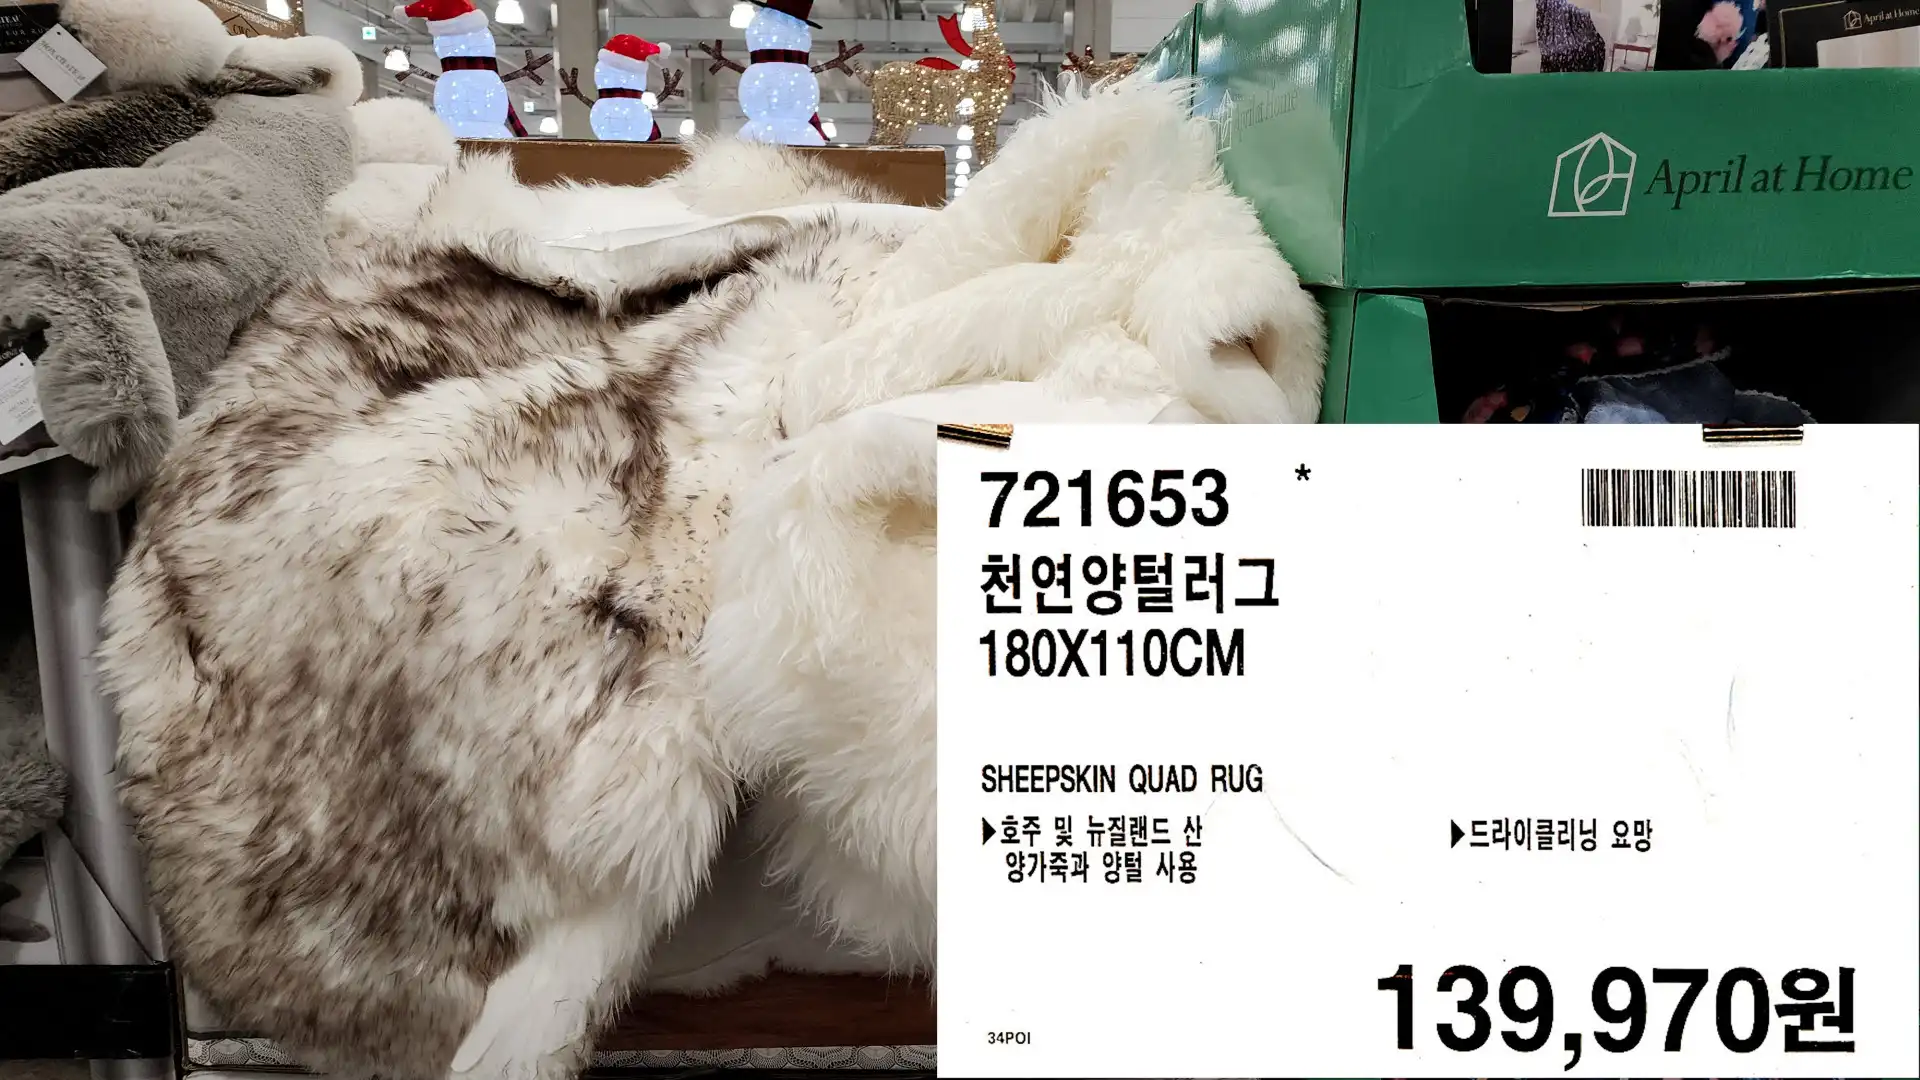 천연양털러그
180X110CM
SHEEPSKIN QUAD RUG
▶ 호주 및 뉴질랜드 산
양가죽과 양털 사용
▶드라이클리닝 요망
139&#44;970원